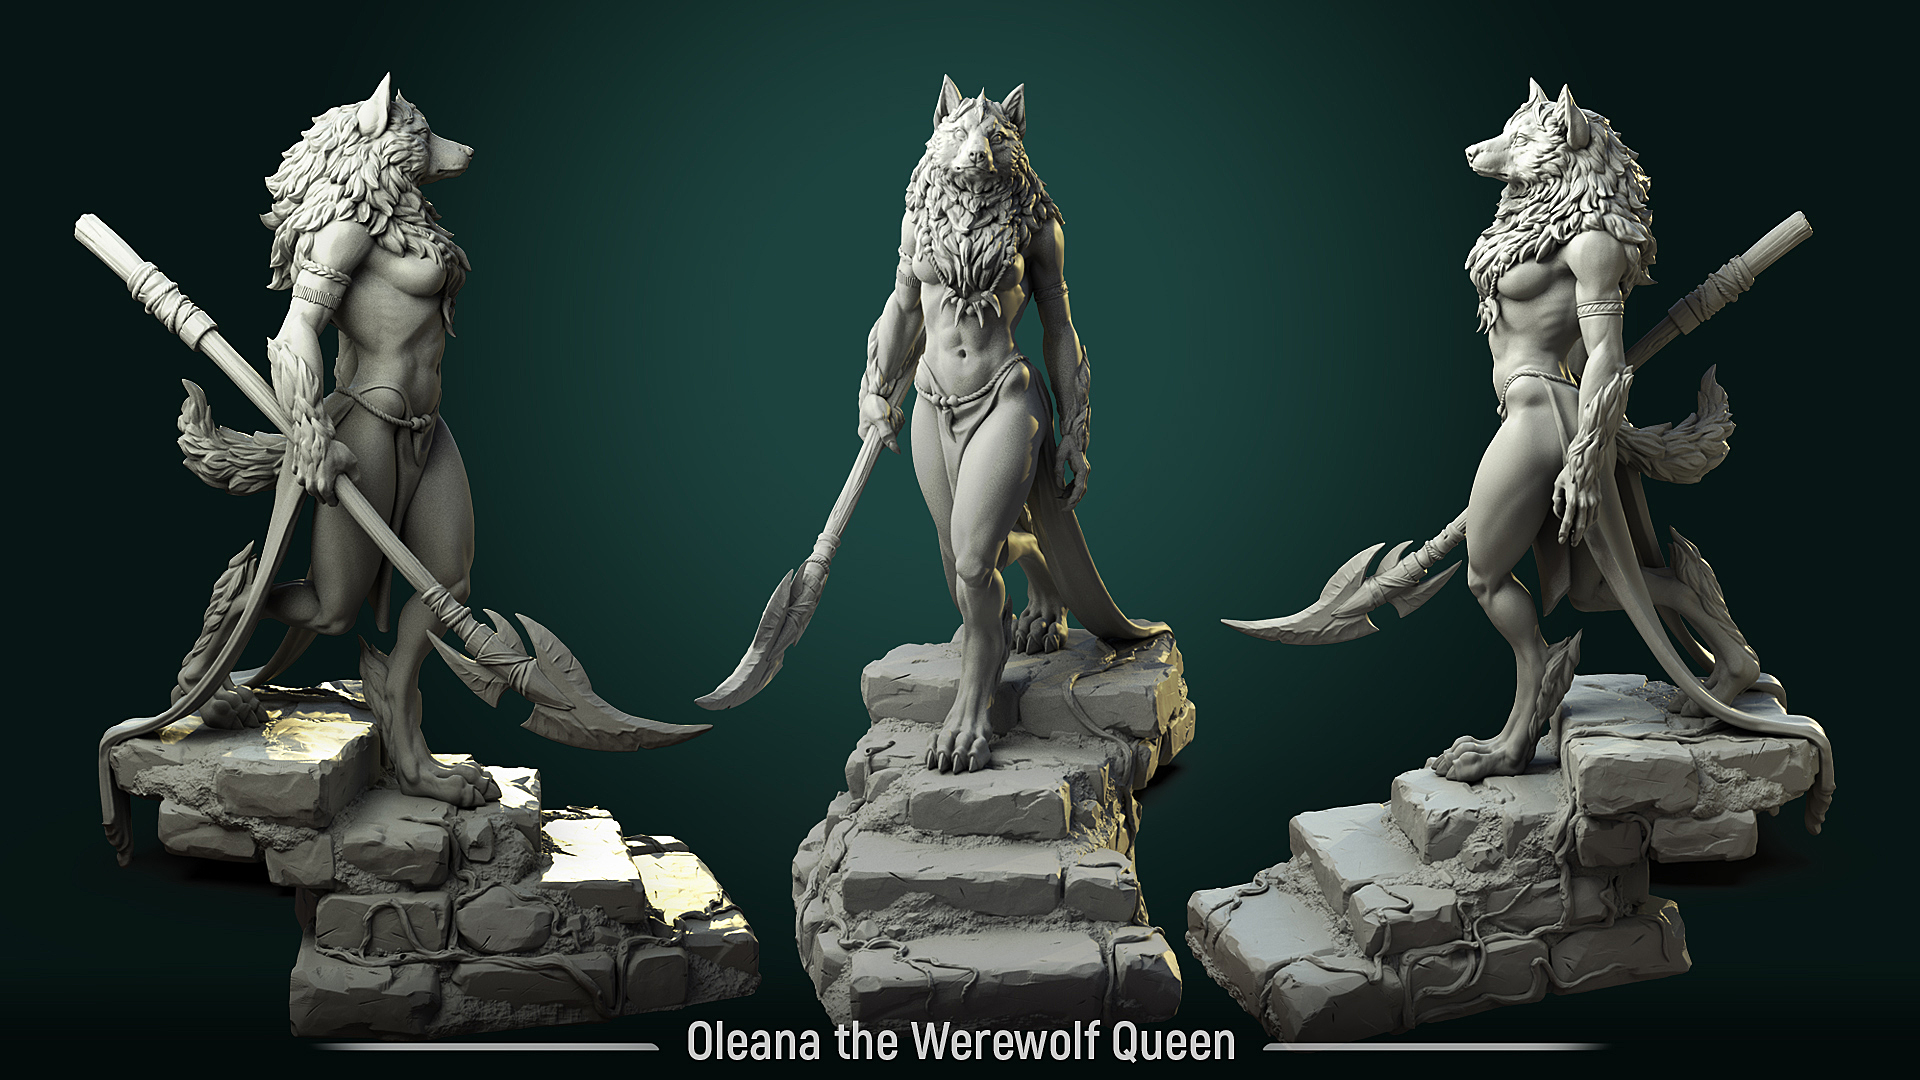 Oleana the Werewolf Queen